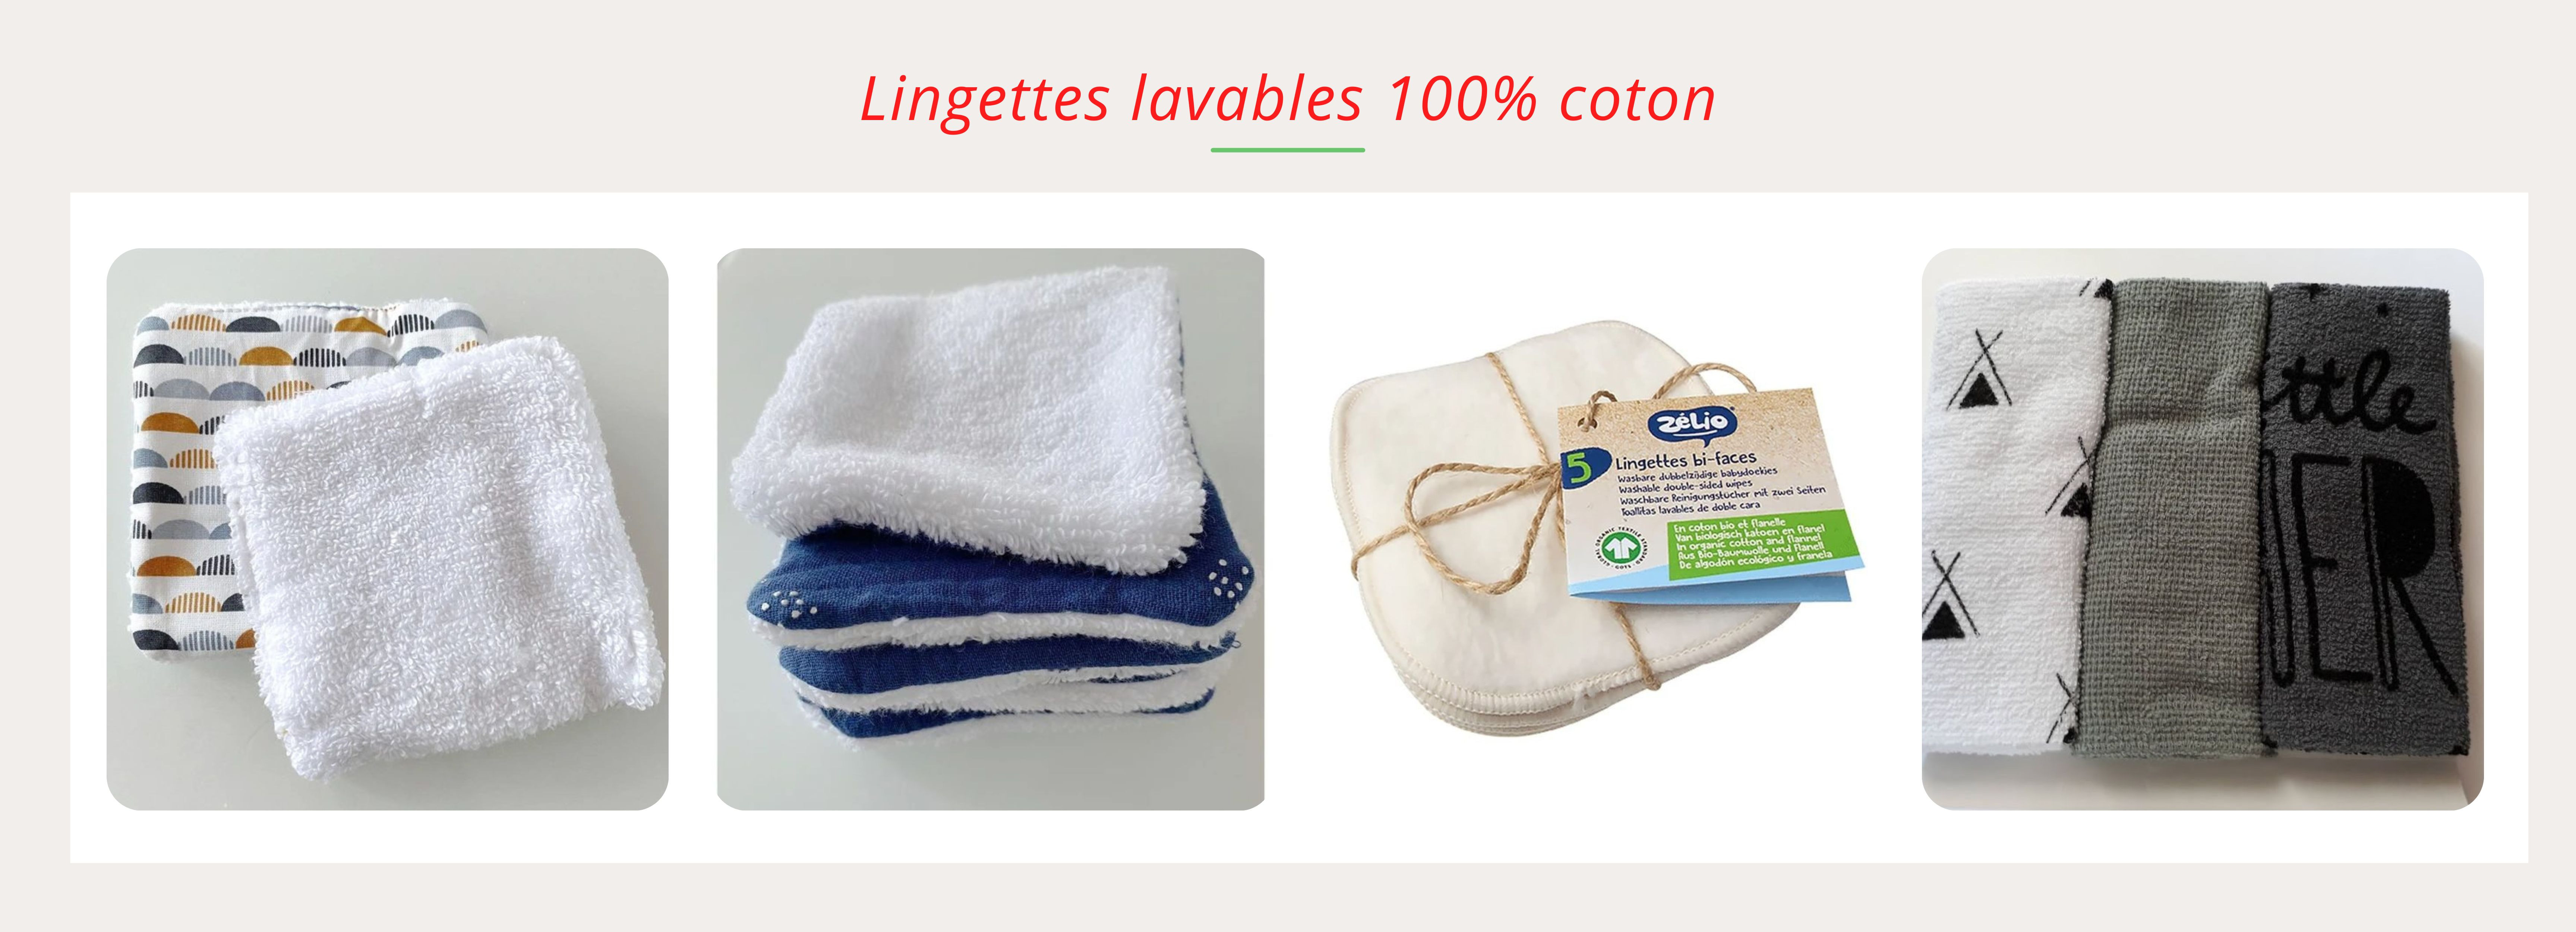 Lingettes lavables 100% coton